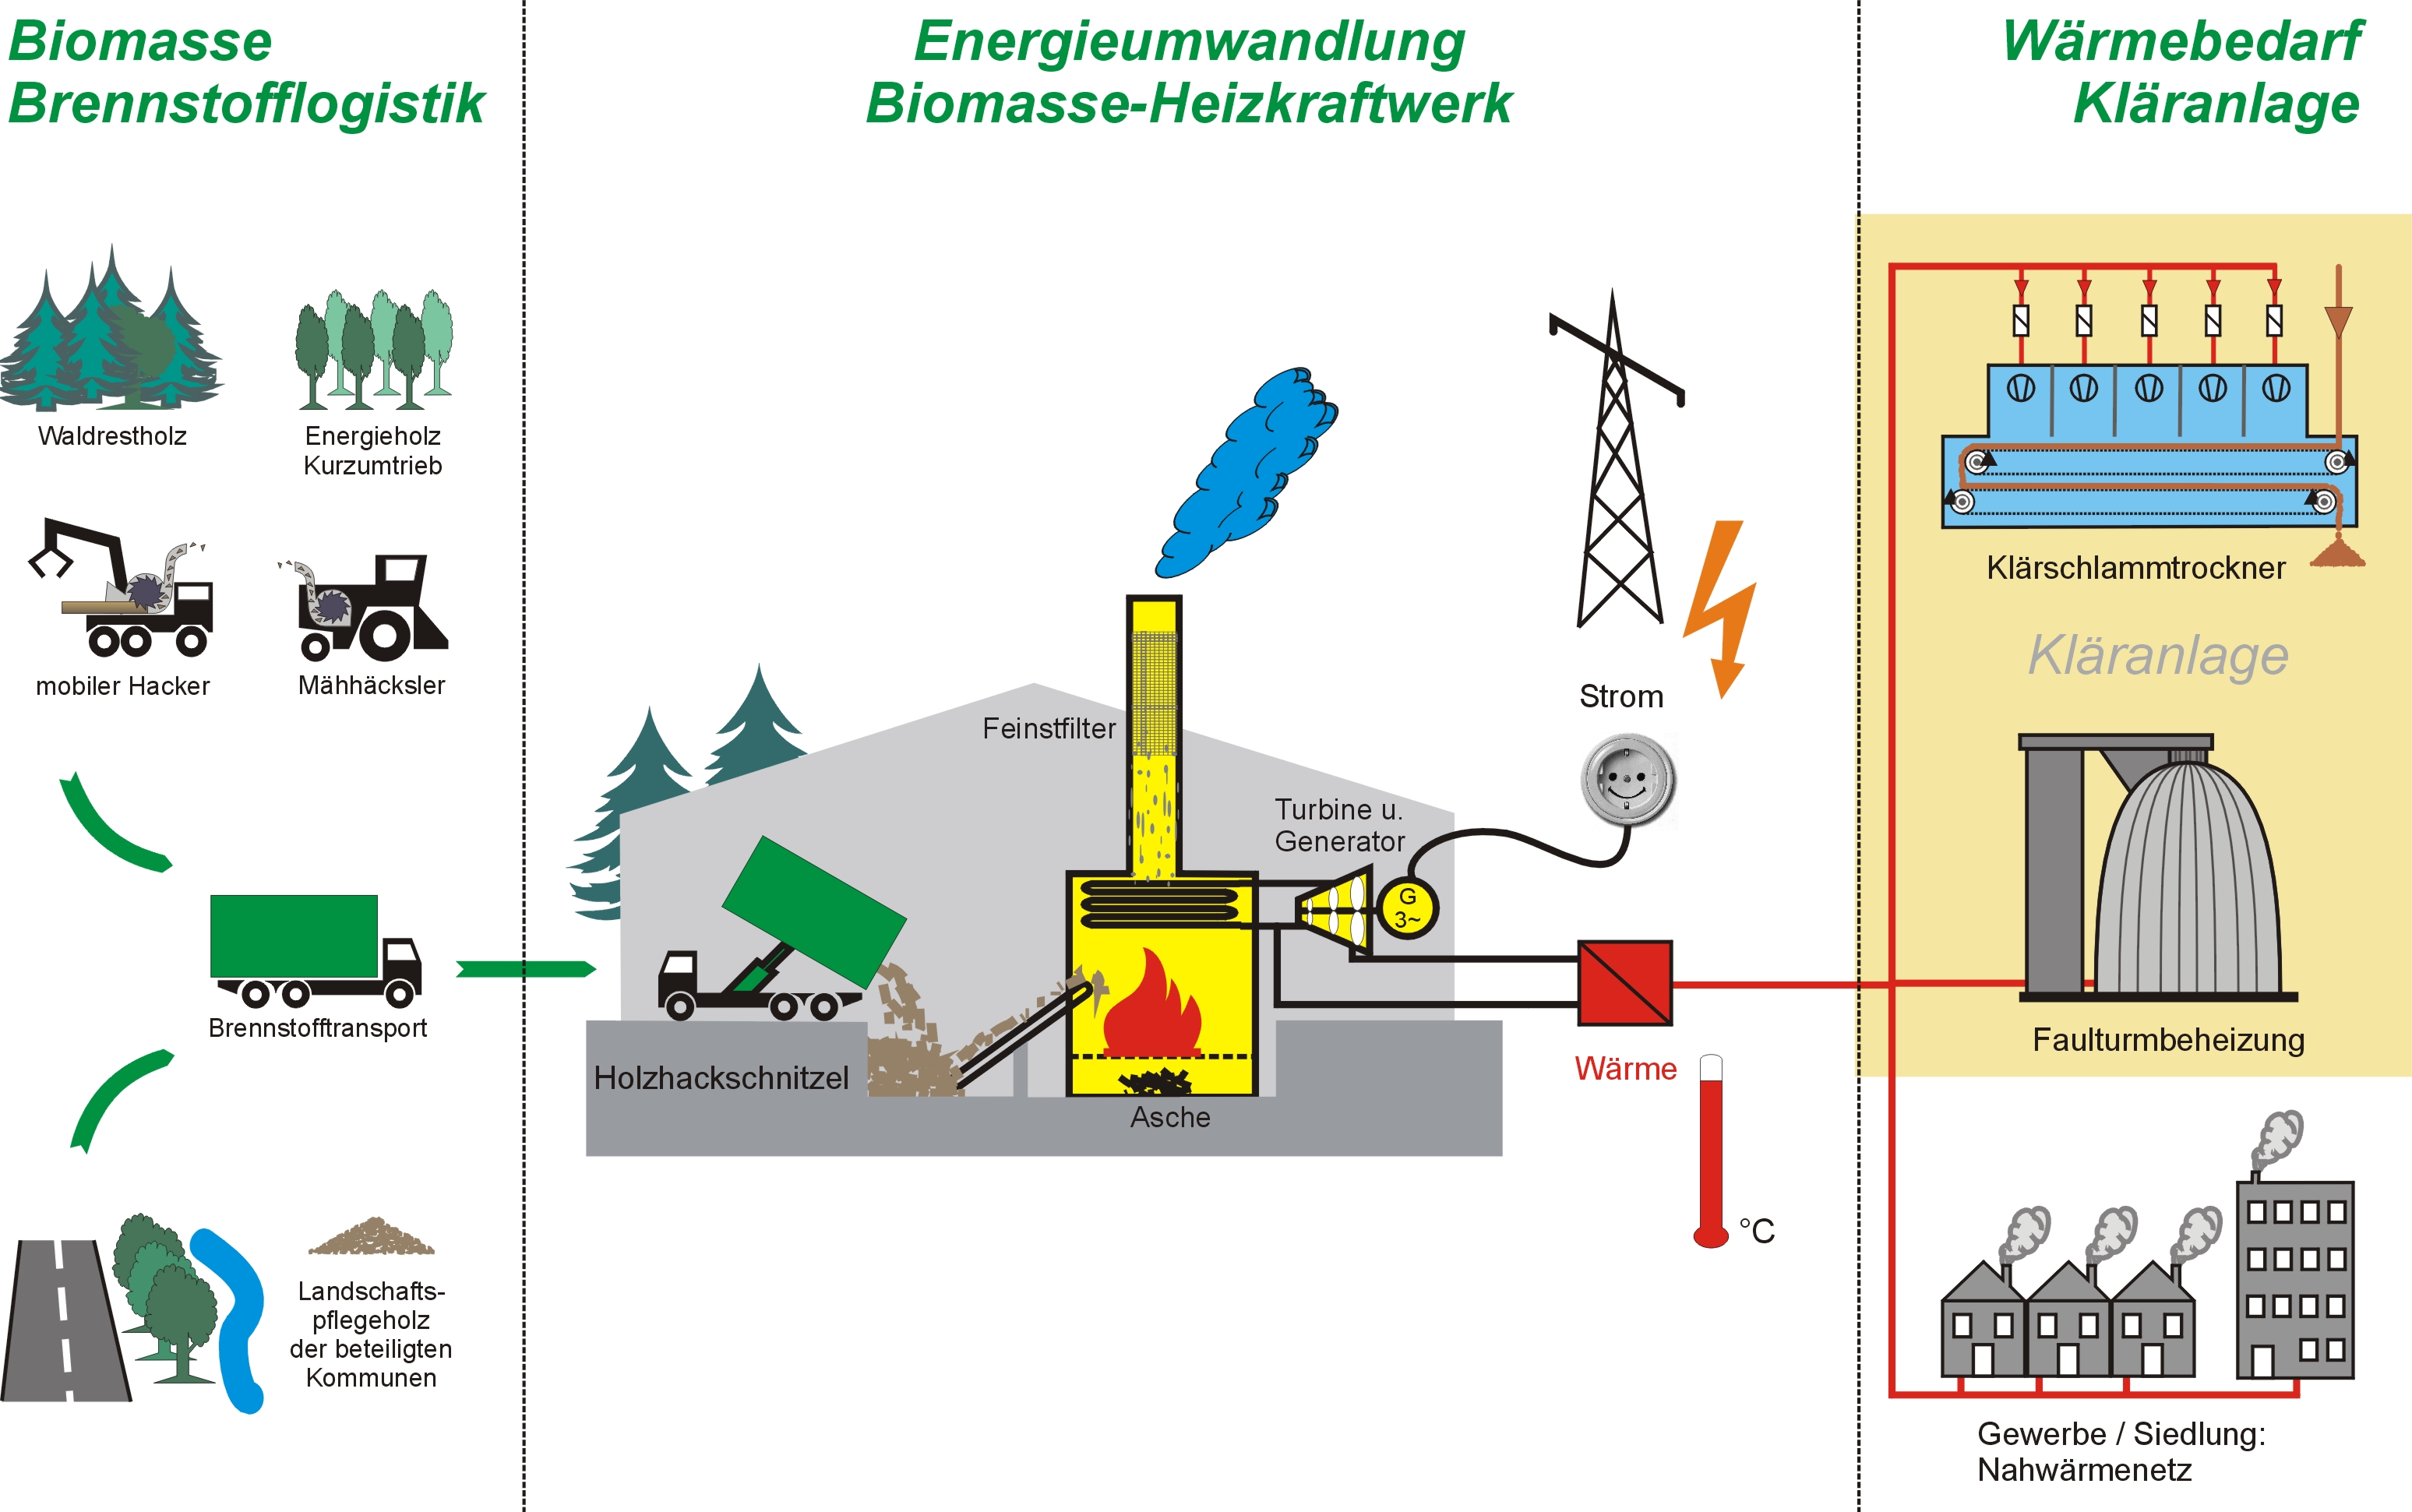 Grafische Aufbereitung des Gesamtprojekts: Durch Energieumwandlung entsteht aus Biomasse Wärme und Strom